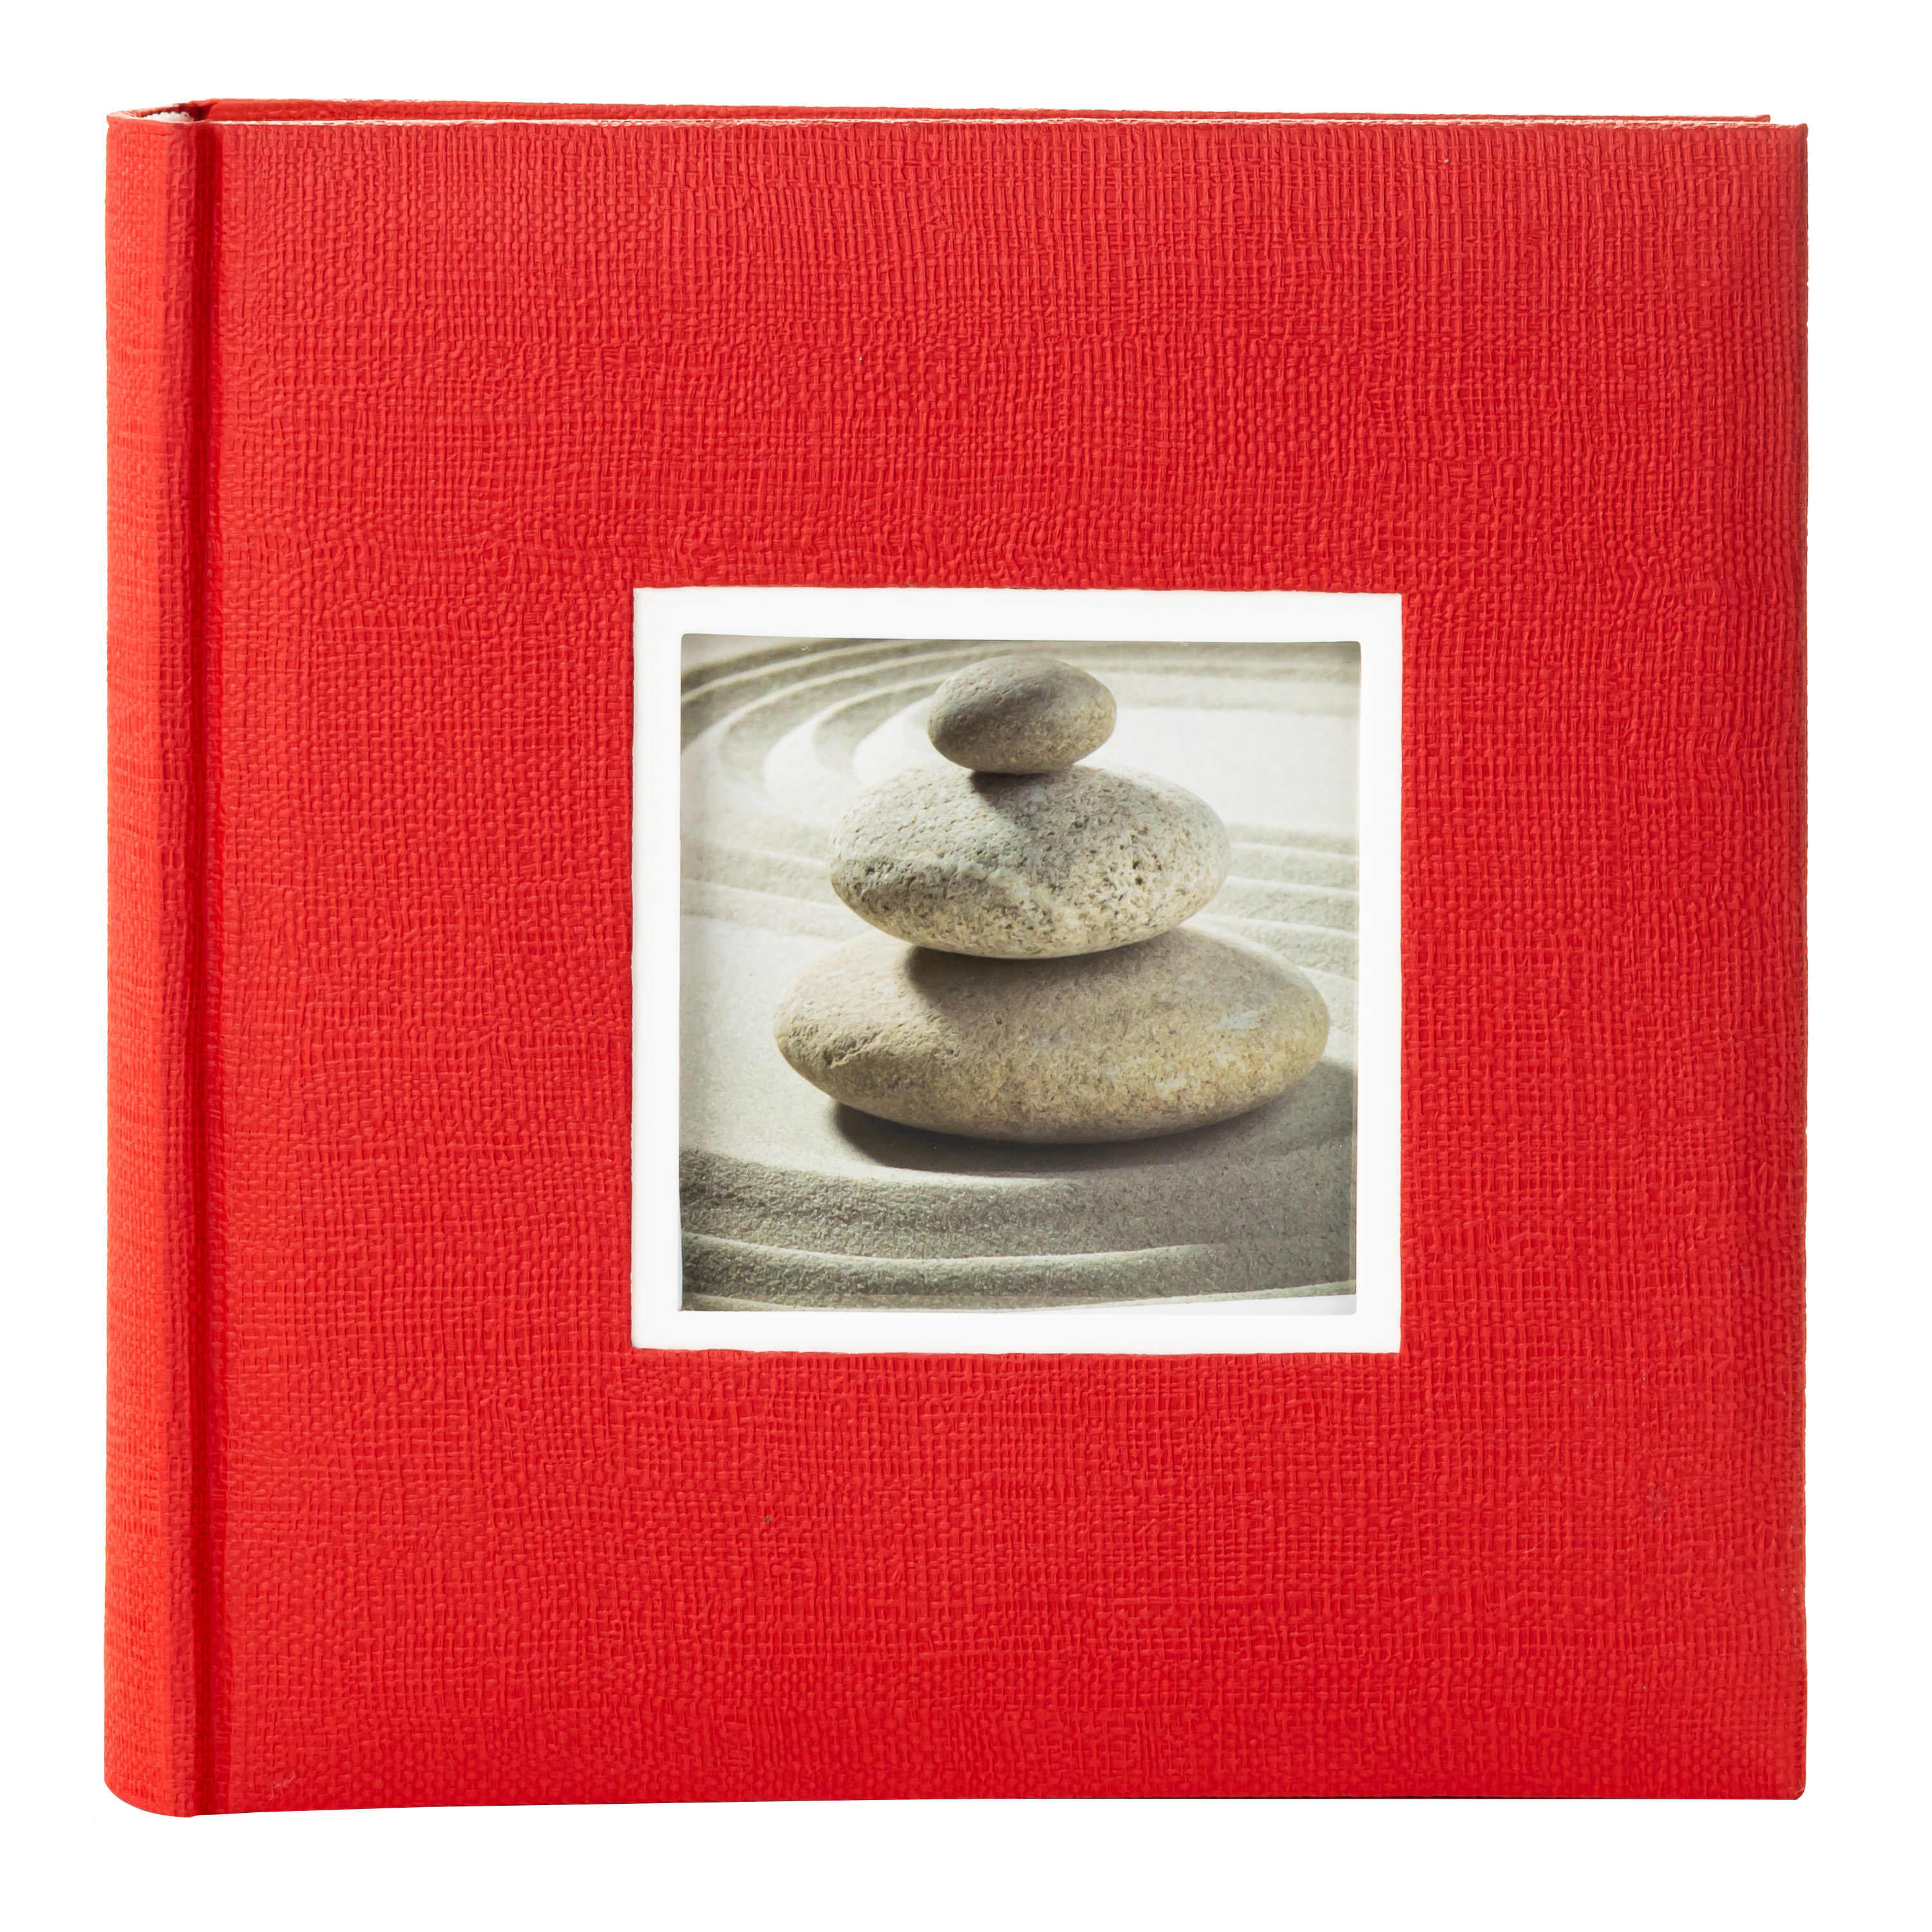 10x15 см 200 фото, книжный переплет, красный, «Крафт», FA-EBBM200-837